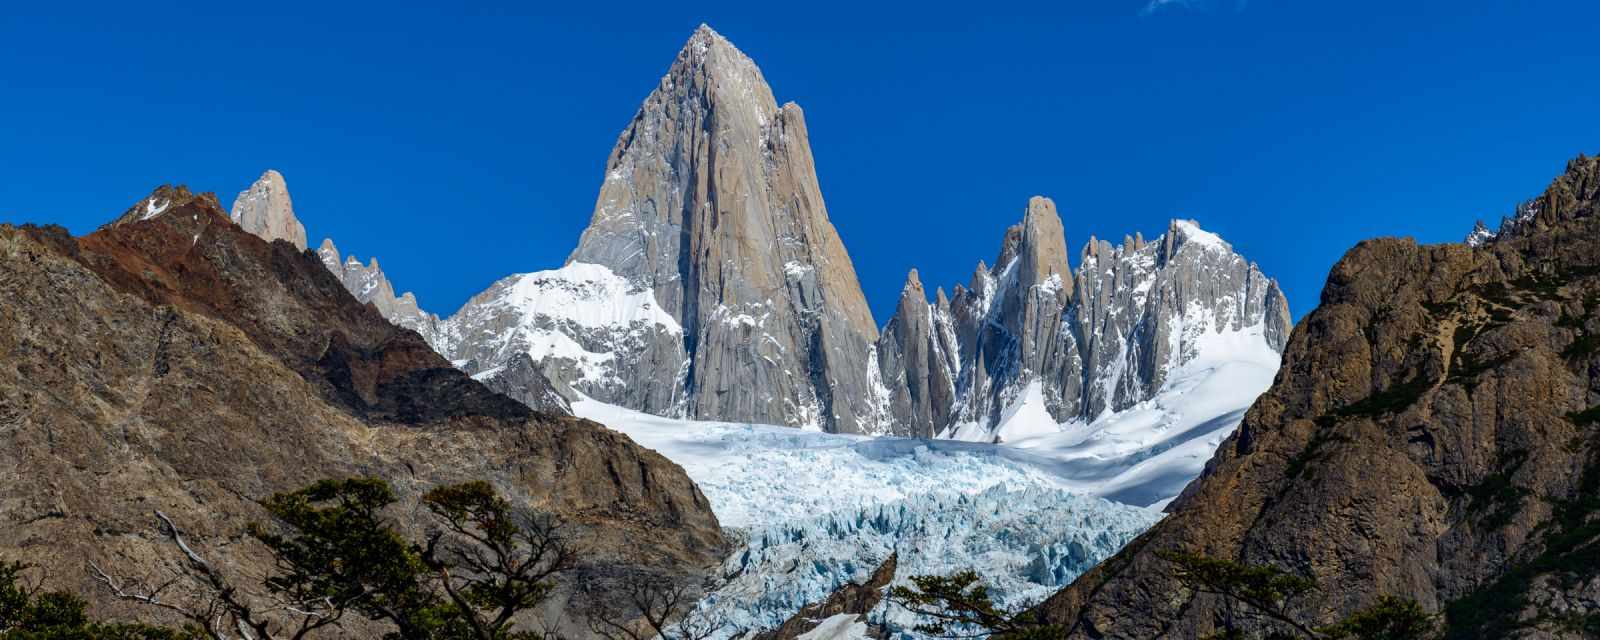 Mount Fitz Roy - El Chaltén Hike in Patagonia + 7 Tips